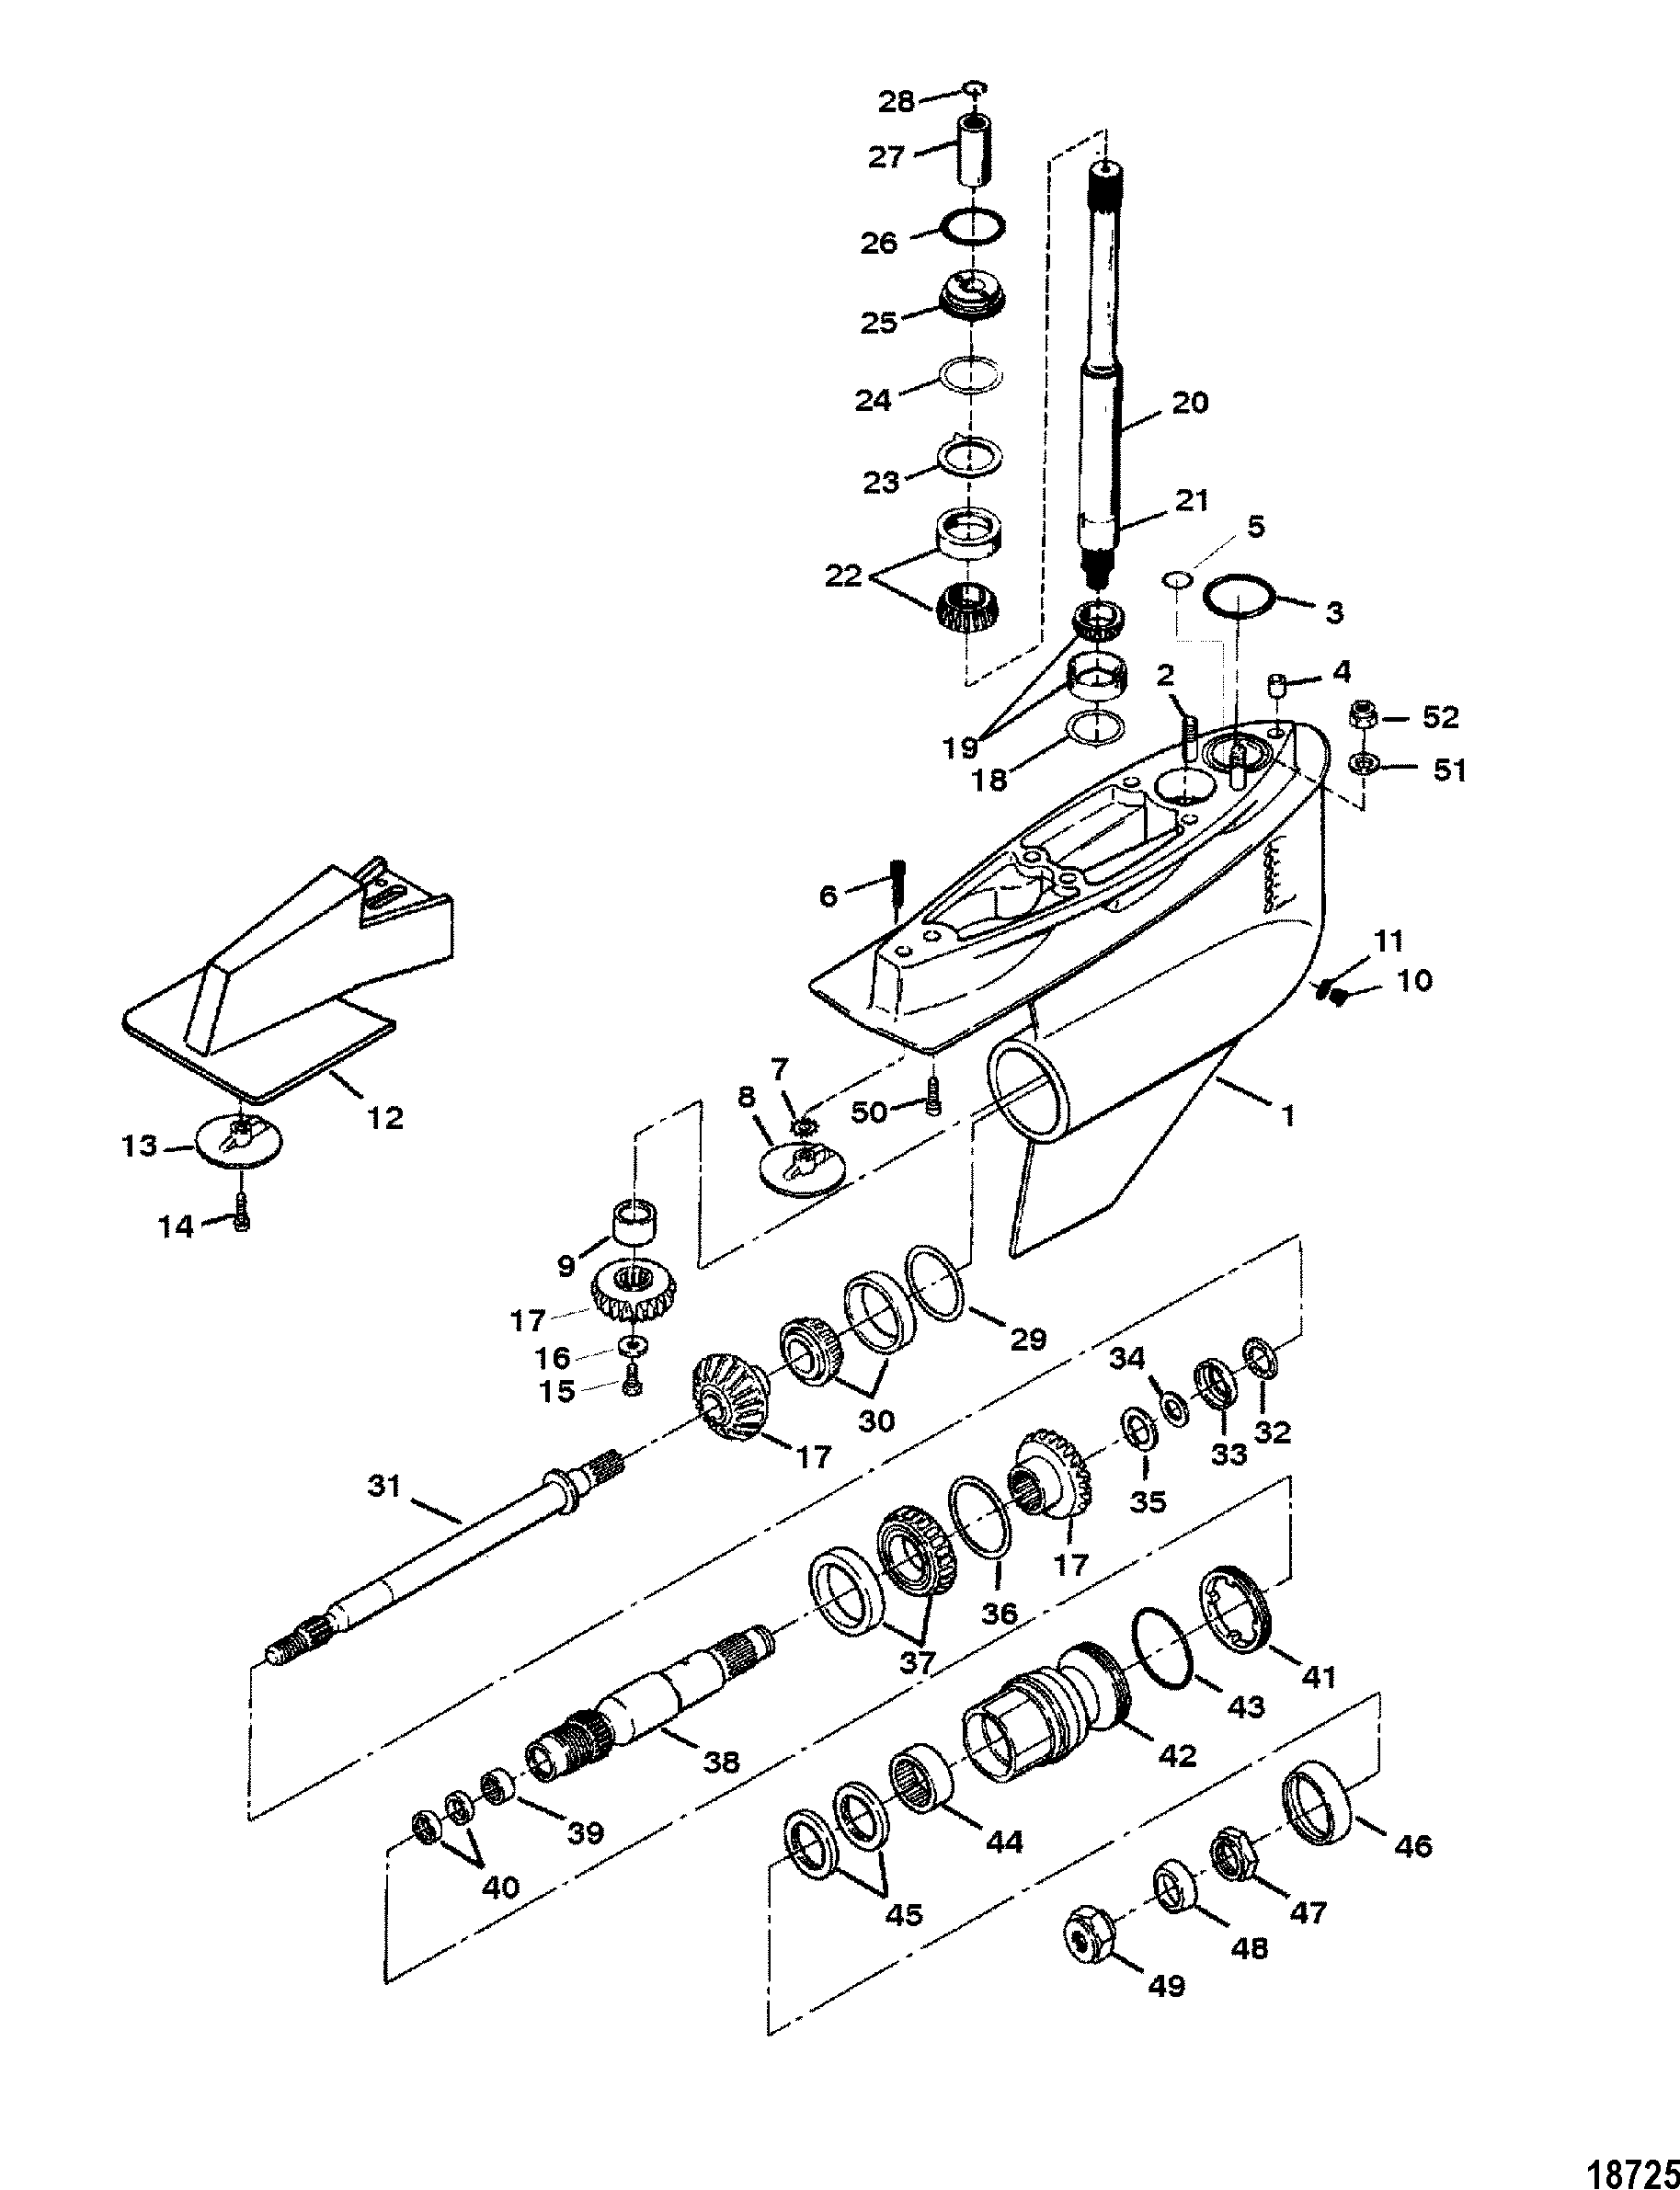 Mercruiser Bravo 3 Outdrive Diagram - General Wiring Diagram